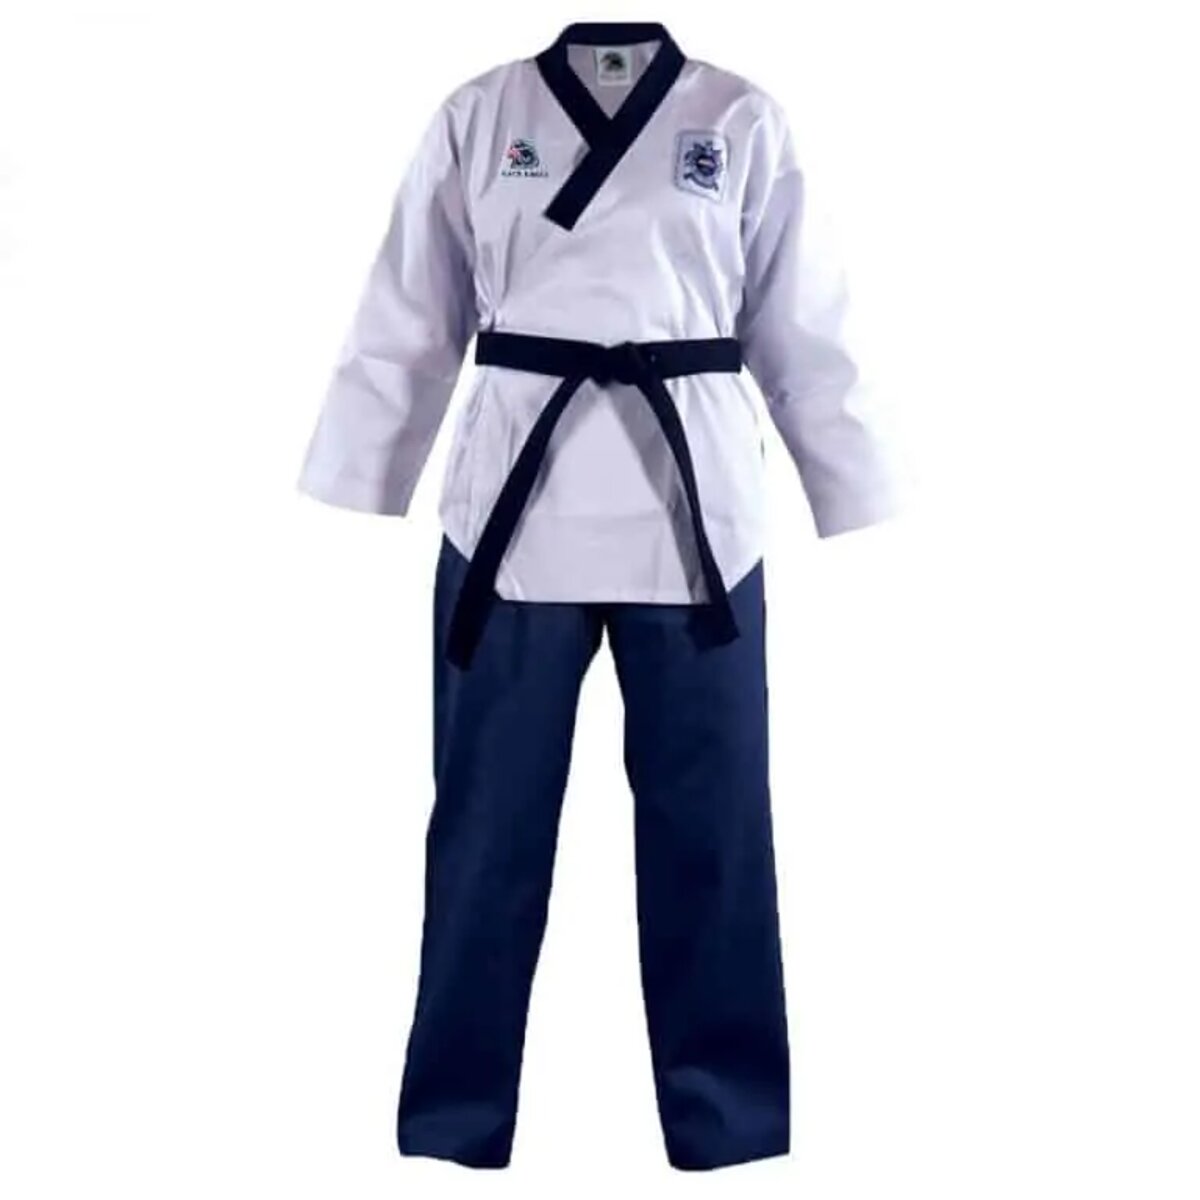 Võ phục Taekwondo màu xanh dương thanh lịch